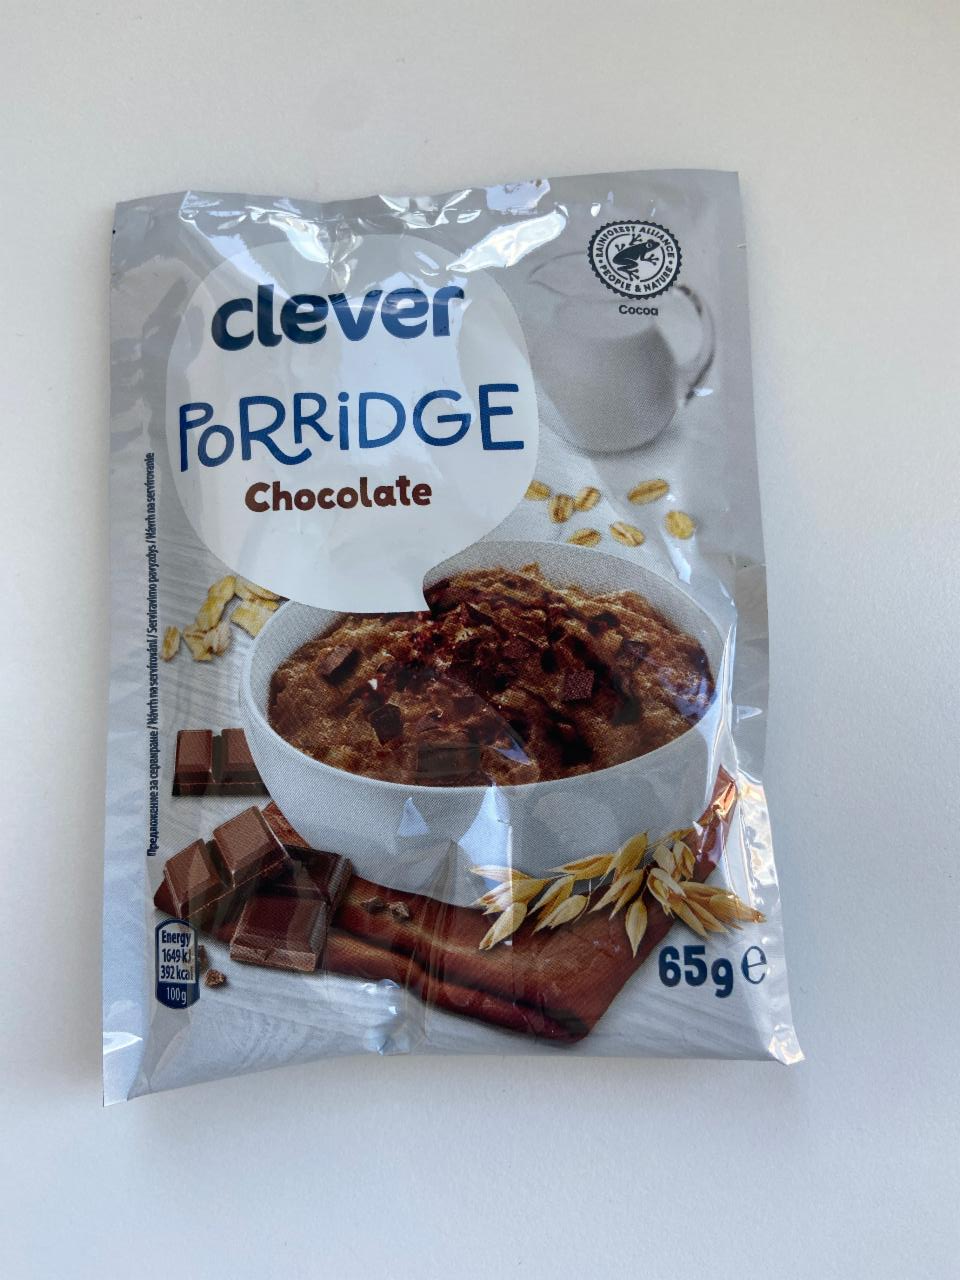 Fotografie - Porridge Chocolate Clever